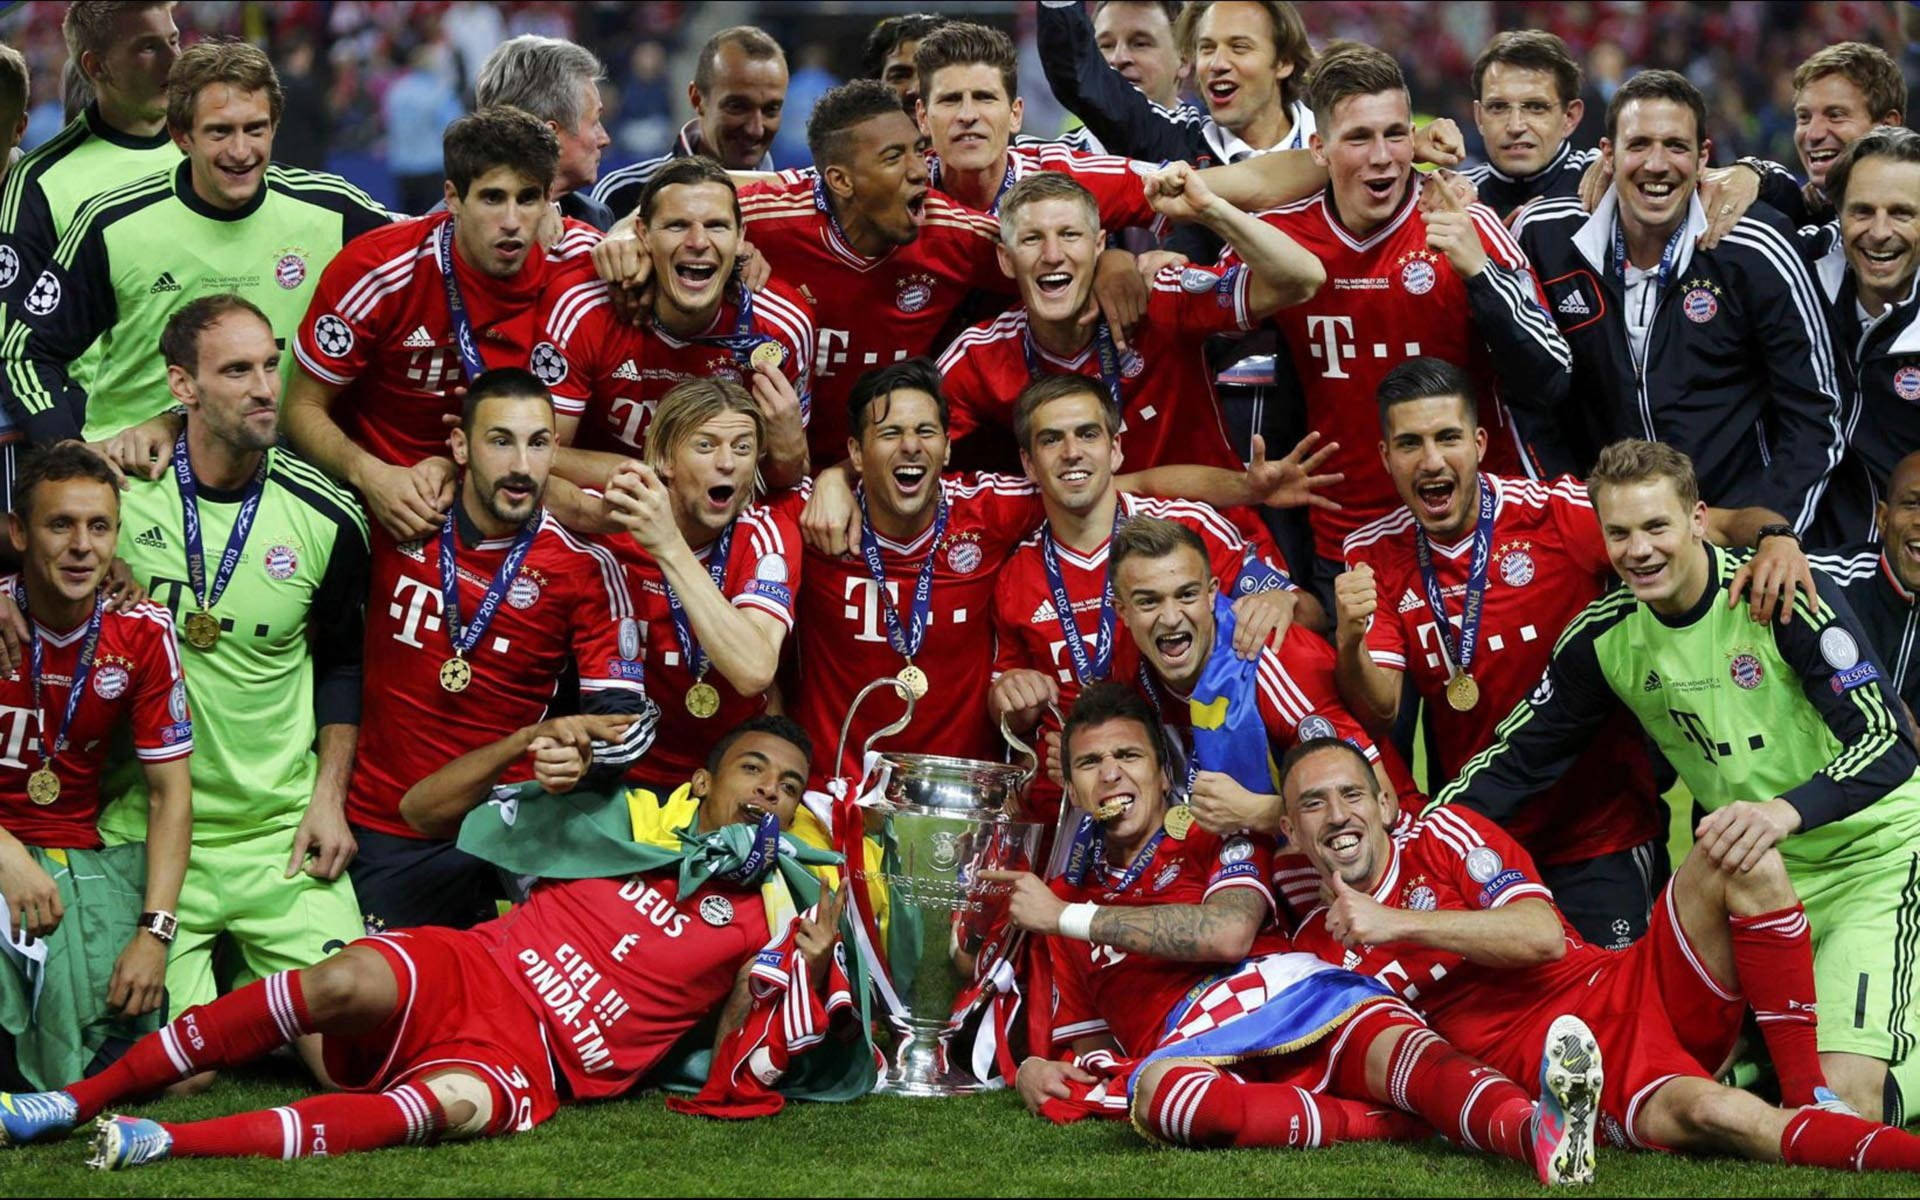 Bayern Munich Champions League 2013 Background